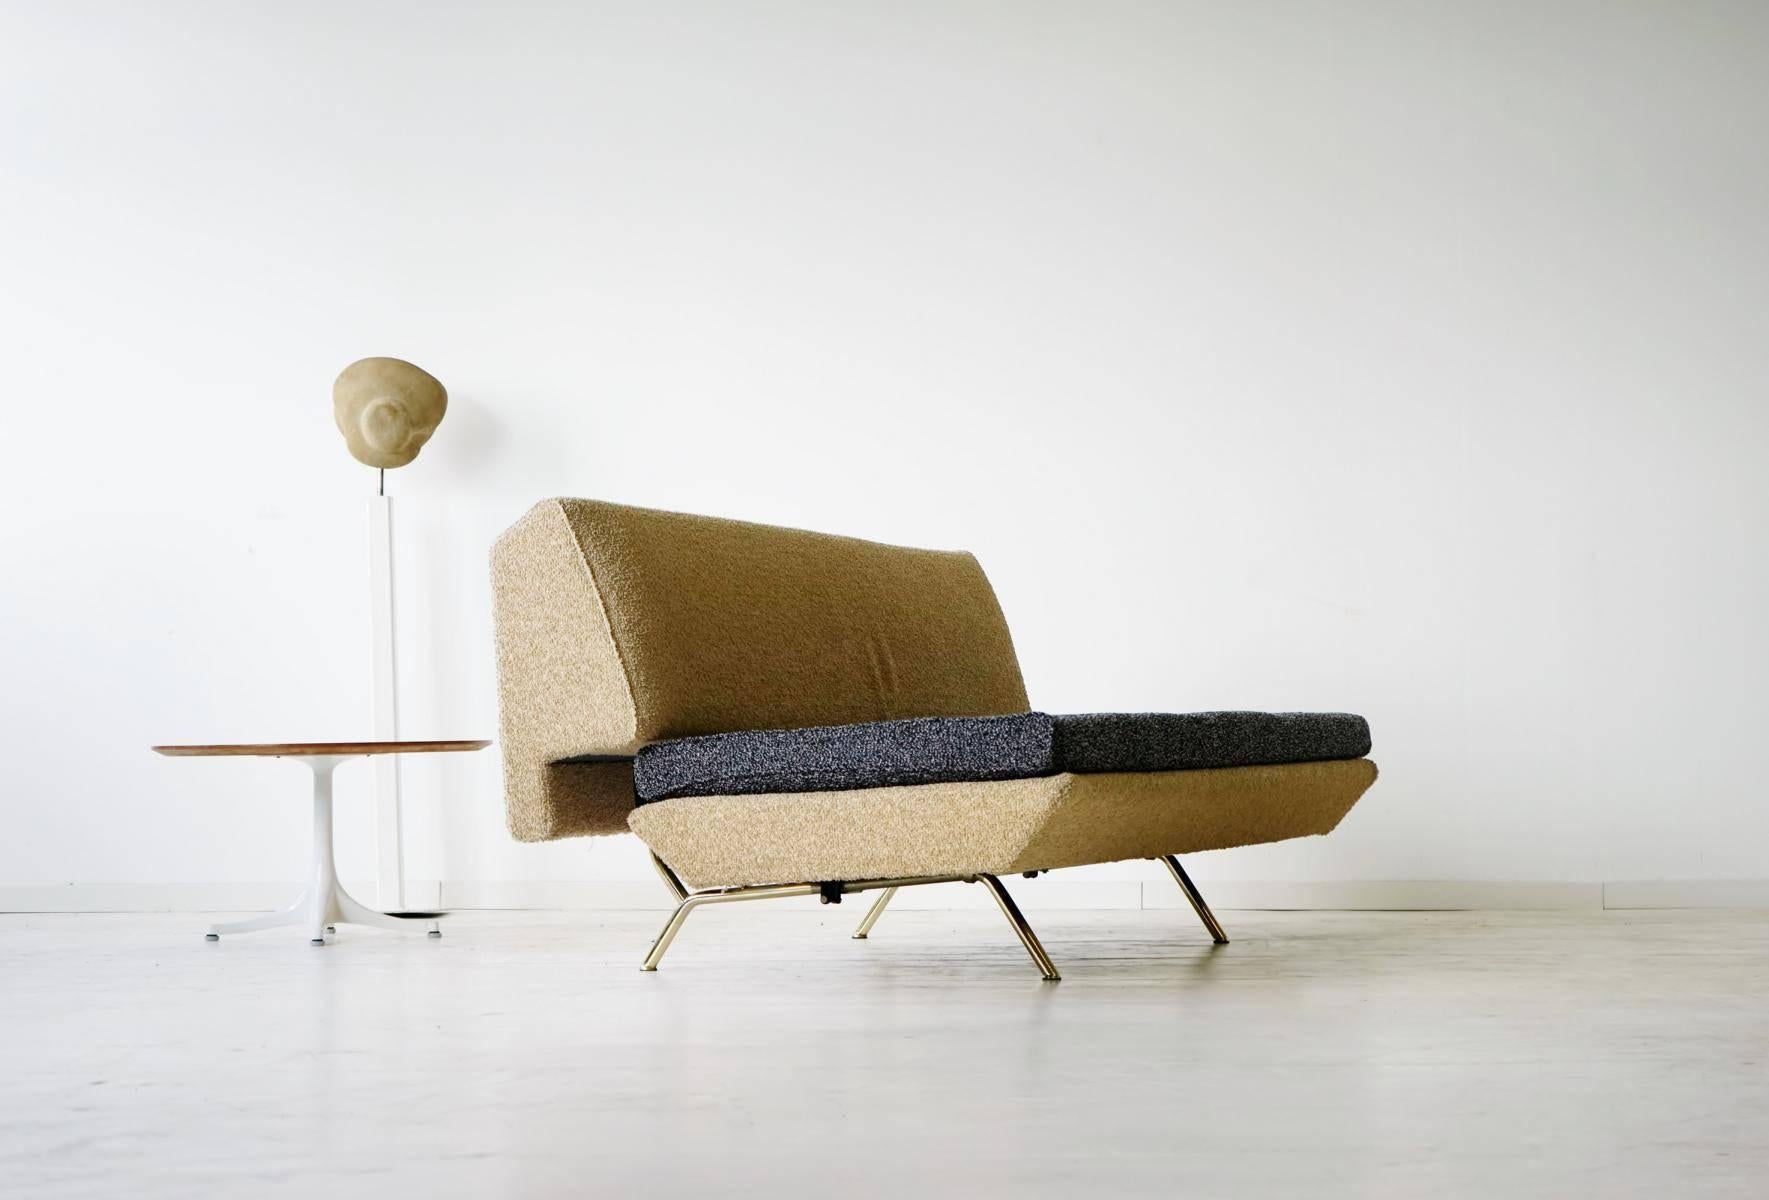 Sleep-O-Matic Lounge-Sofa / Daybed:: 1950er Jahre:: Marco Zanuso für Arflex

Sofa mit Ausziehfunktion zum Schlafen. Praktisches Sofa oder Tagesbett von Marco Zanuso:: 1951. 

Tiefe 90 cm/ 105 cm